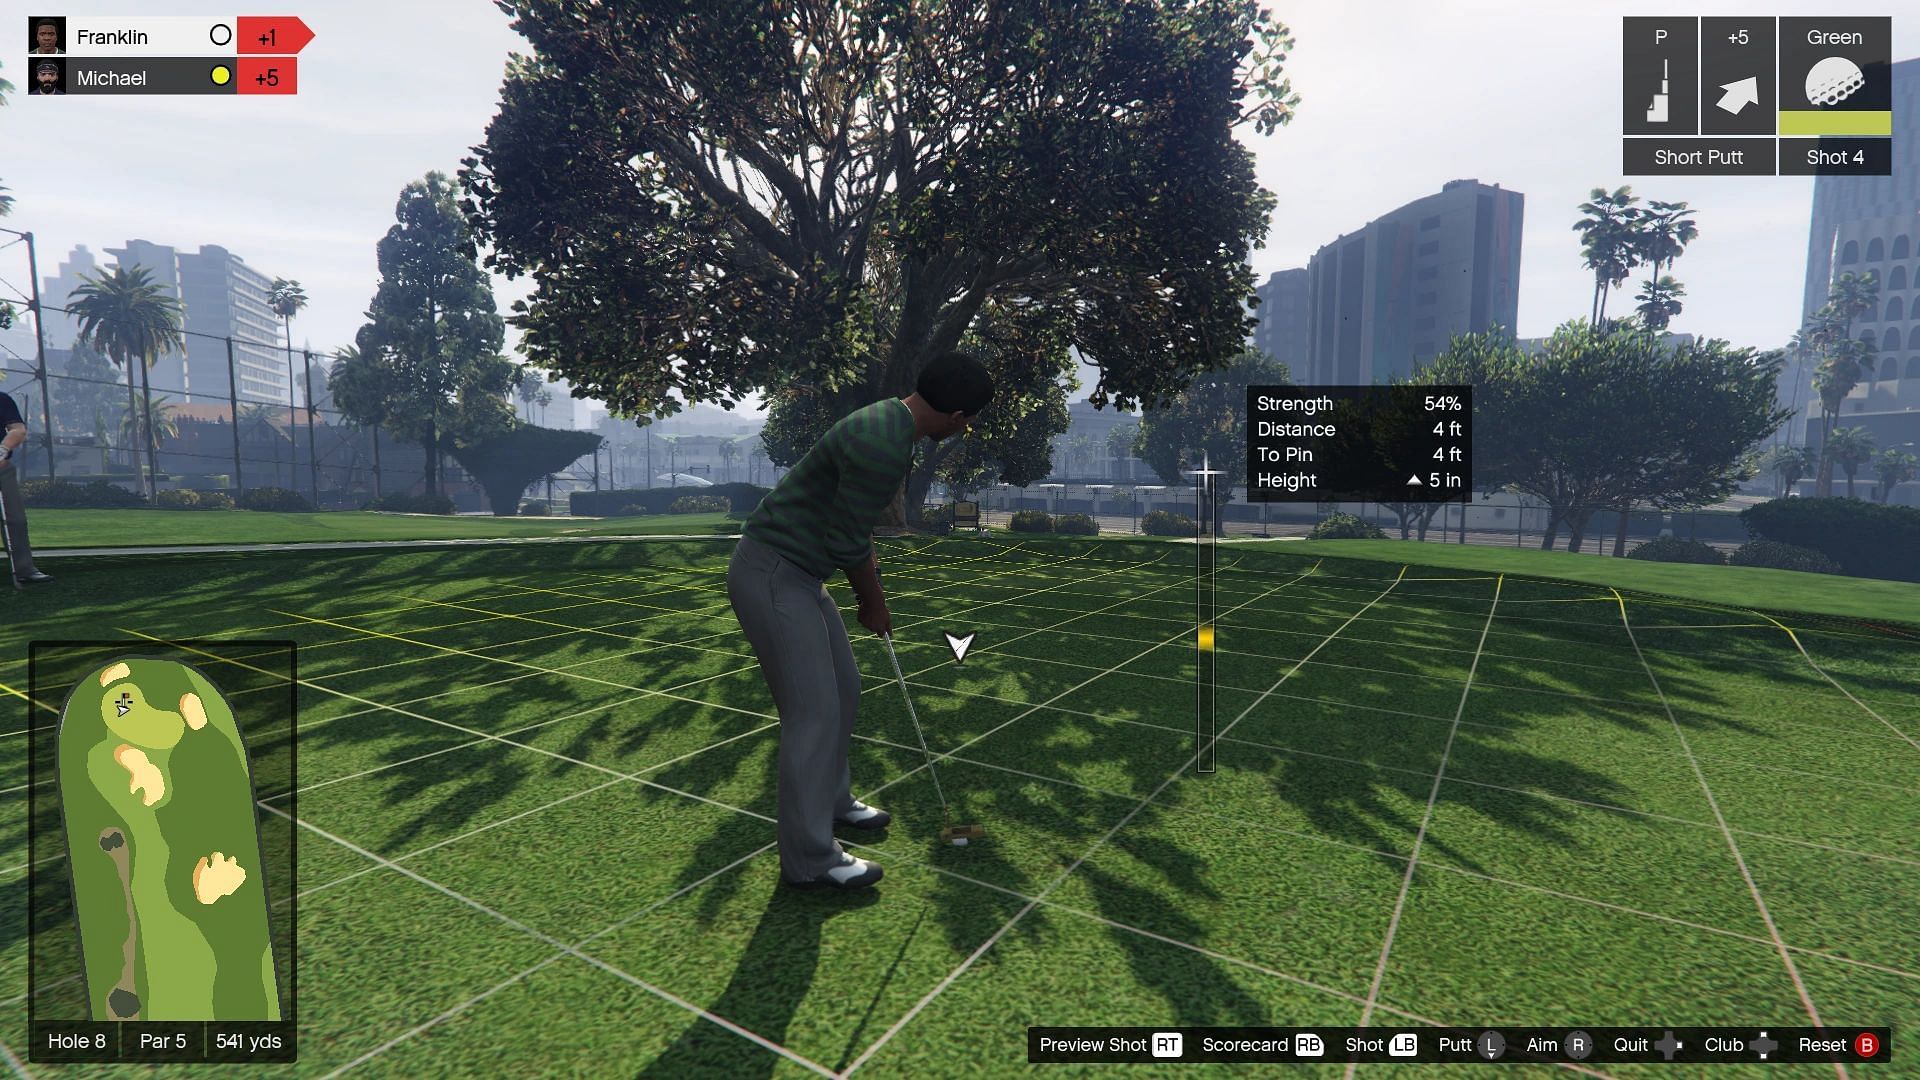 Golf is very popular in GTA games (Image via GTA Wiki/Kiwismurf)